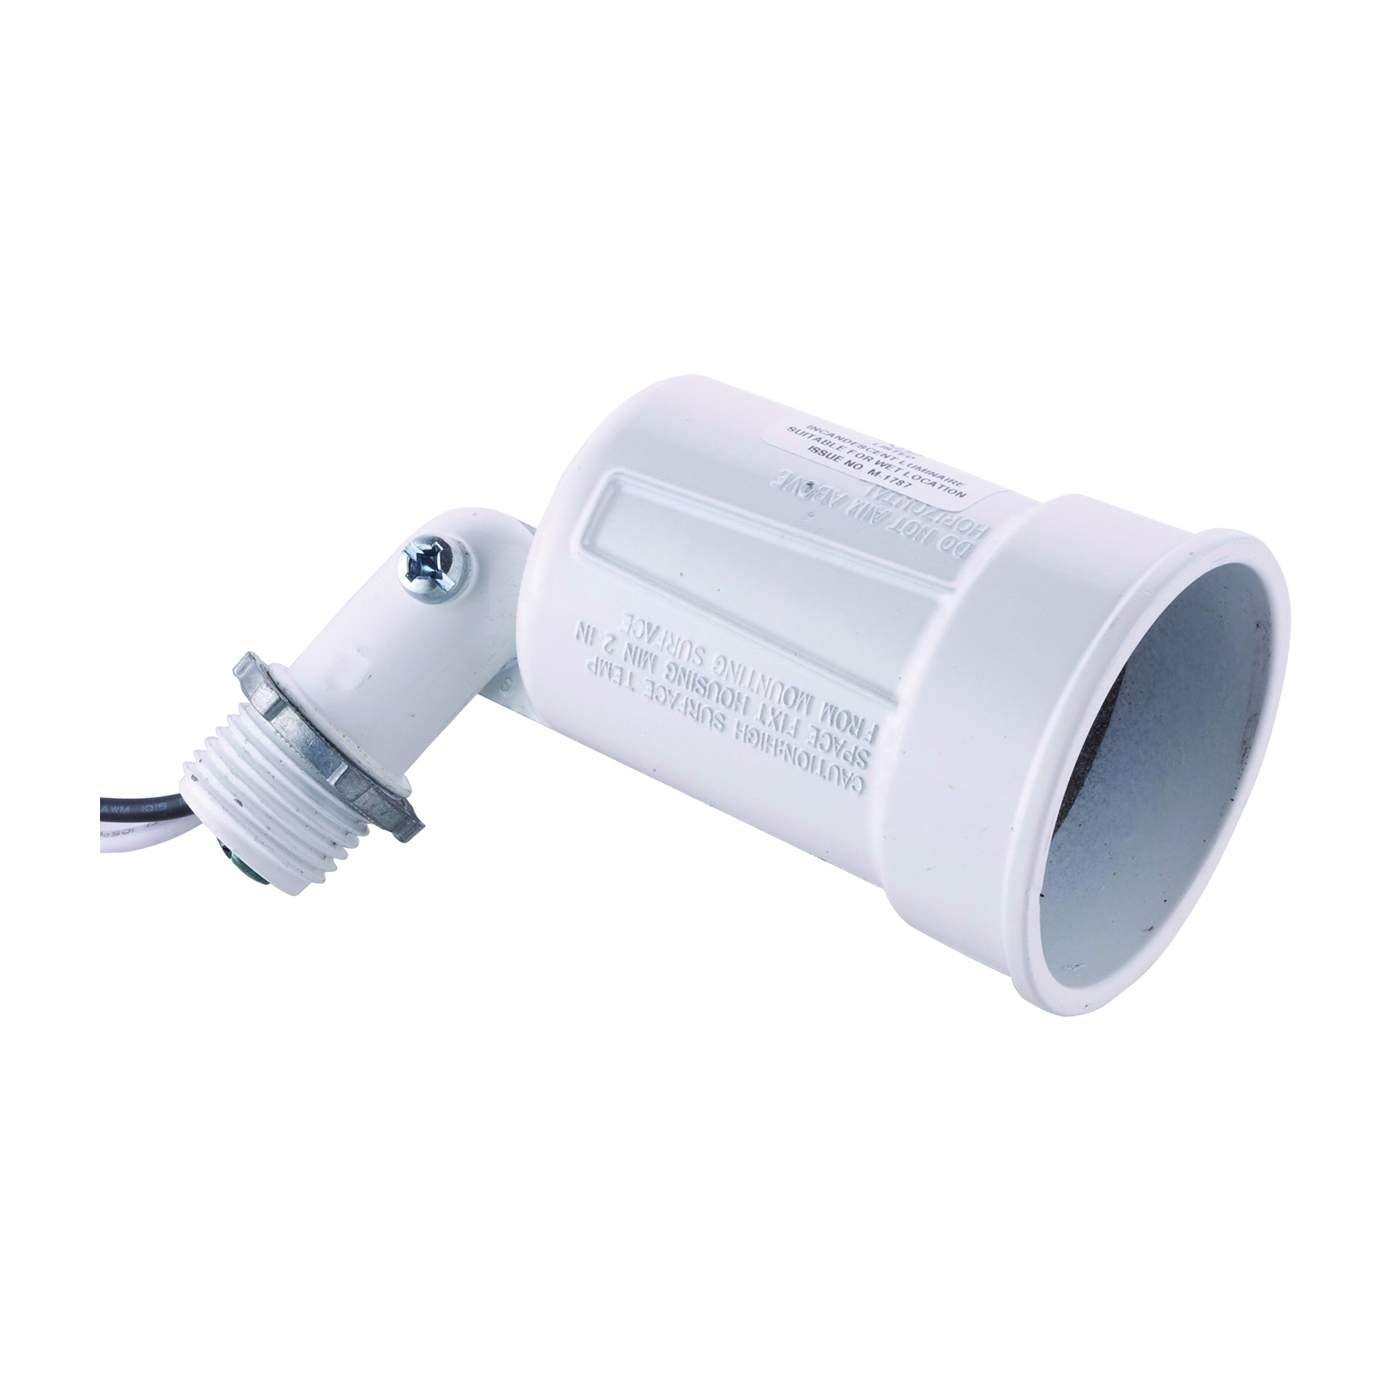 5606-1 Lamp Holder, 120 V, 75 to 150 W, White